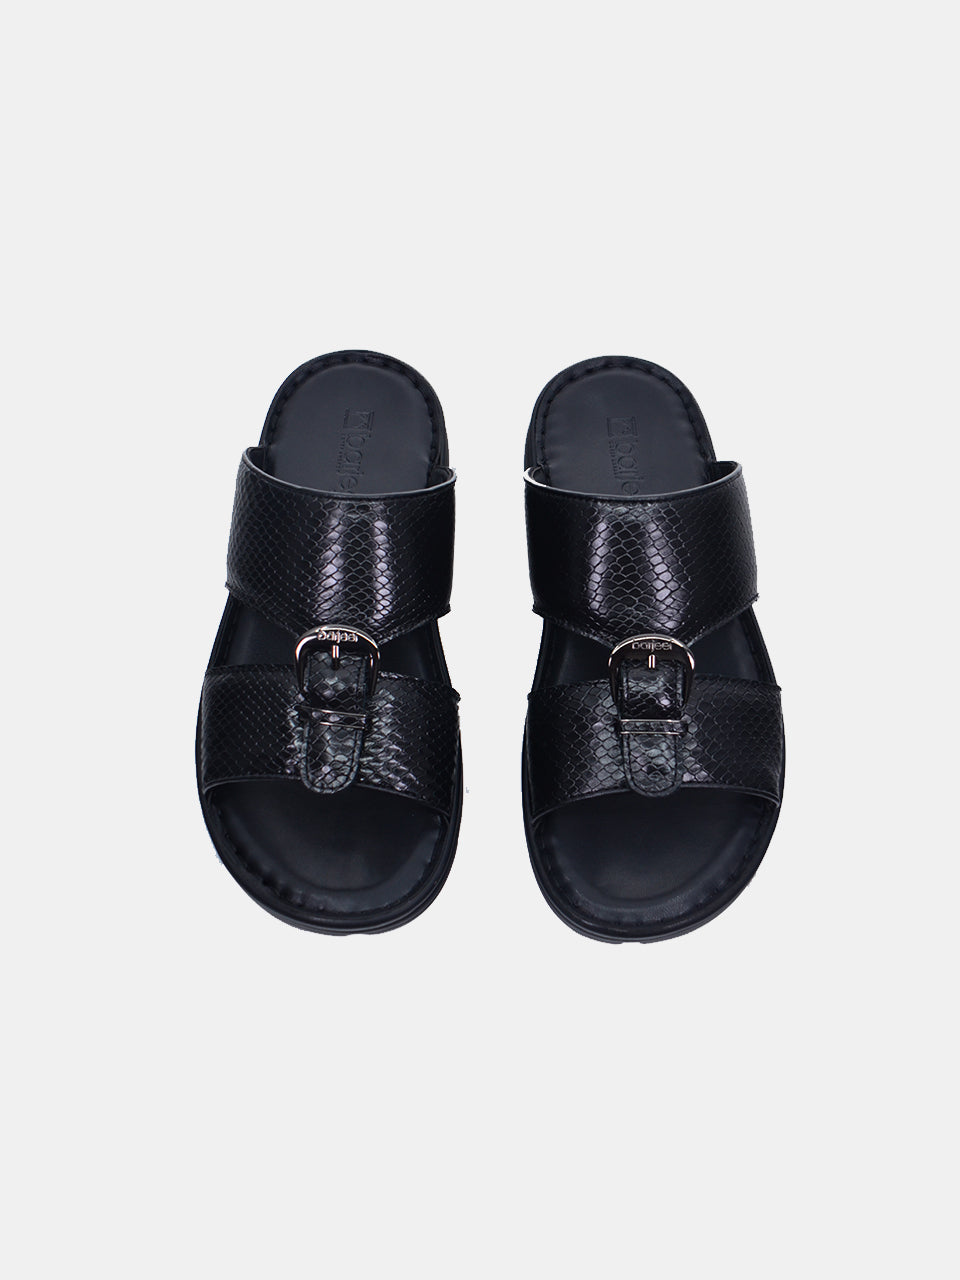 Barjeel Uno 29550-1 Men's Arabic Sandals #color_Black